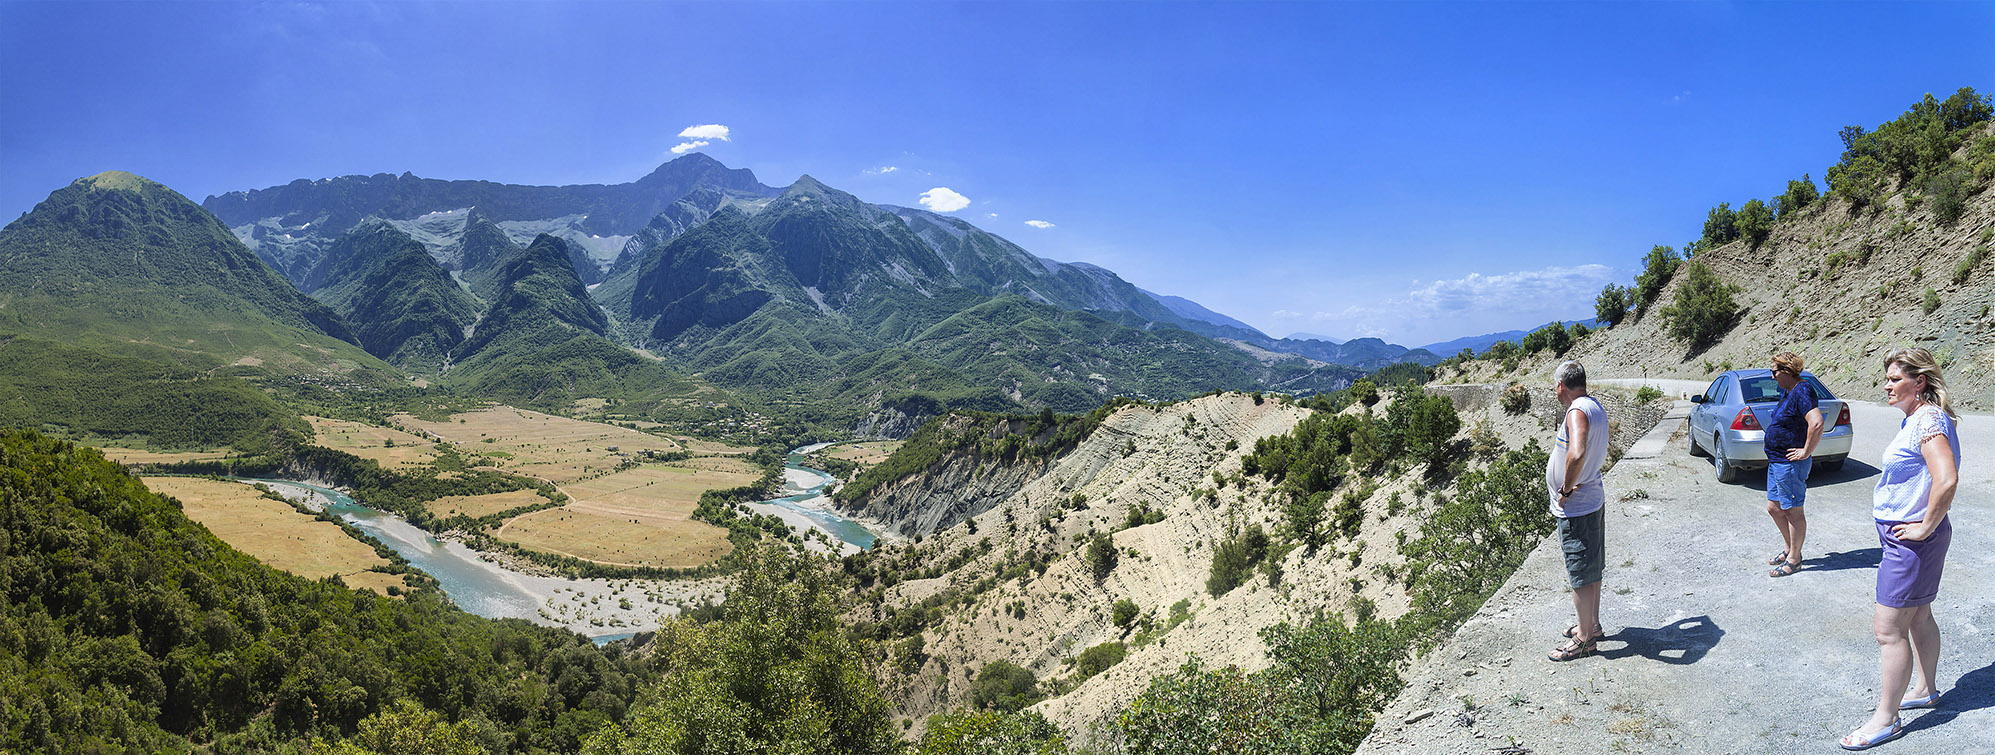 Panorama 4 Albania zmn.jpg